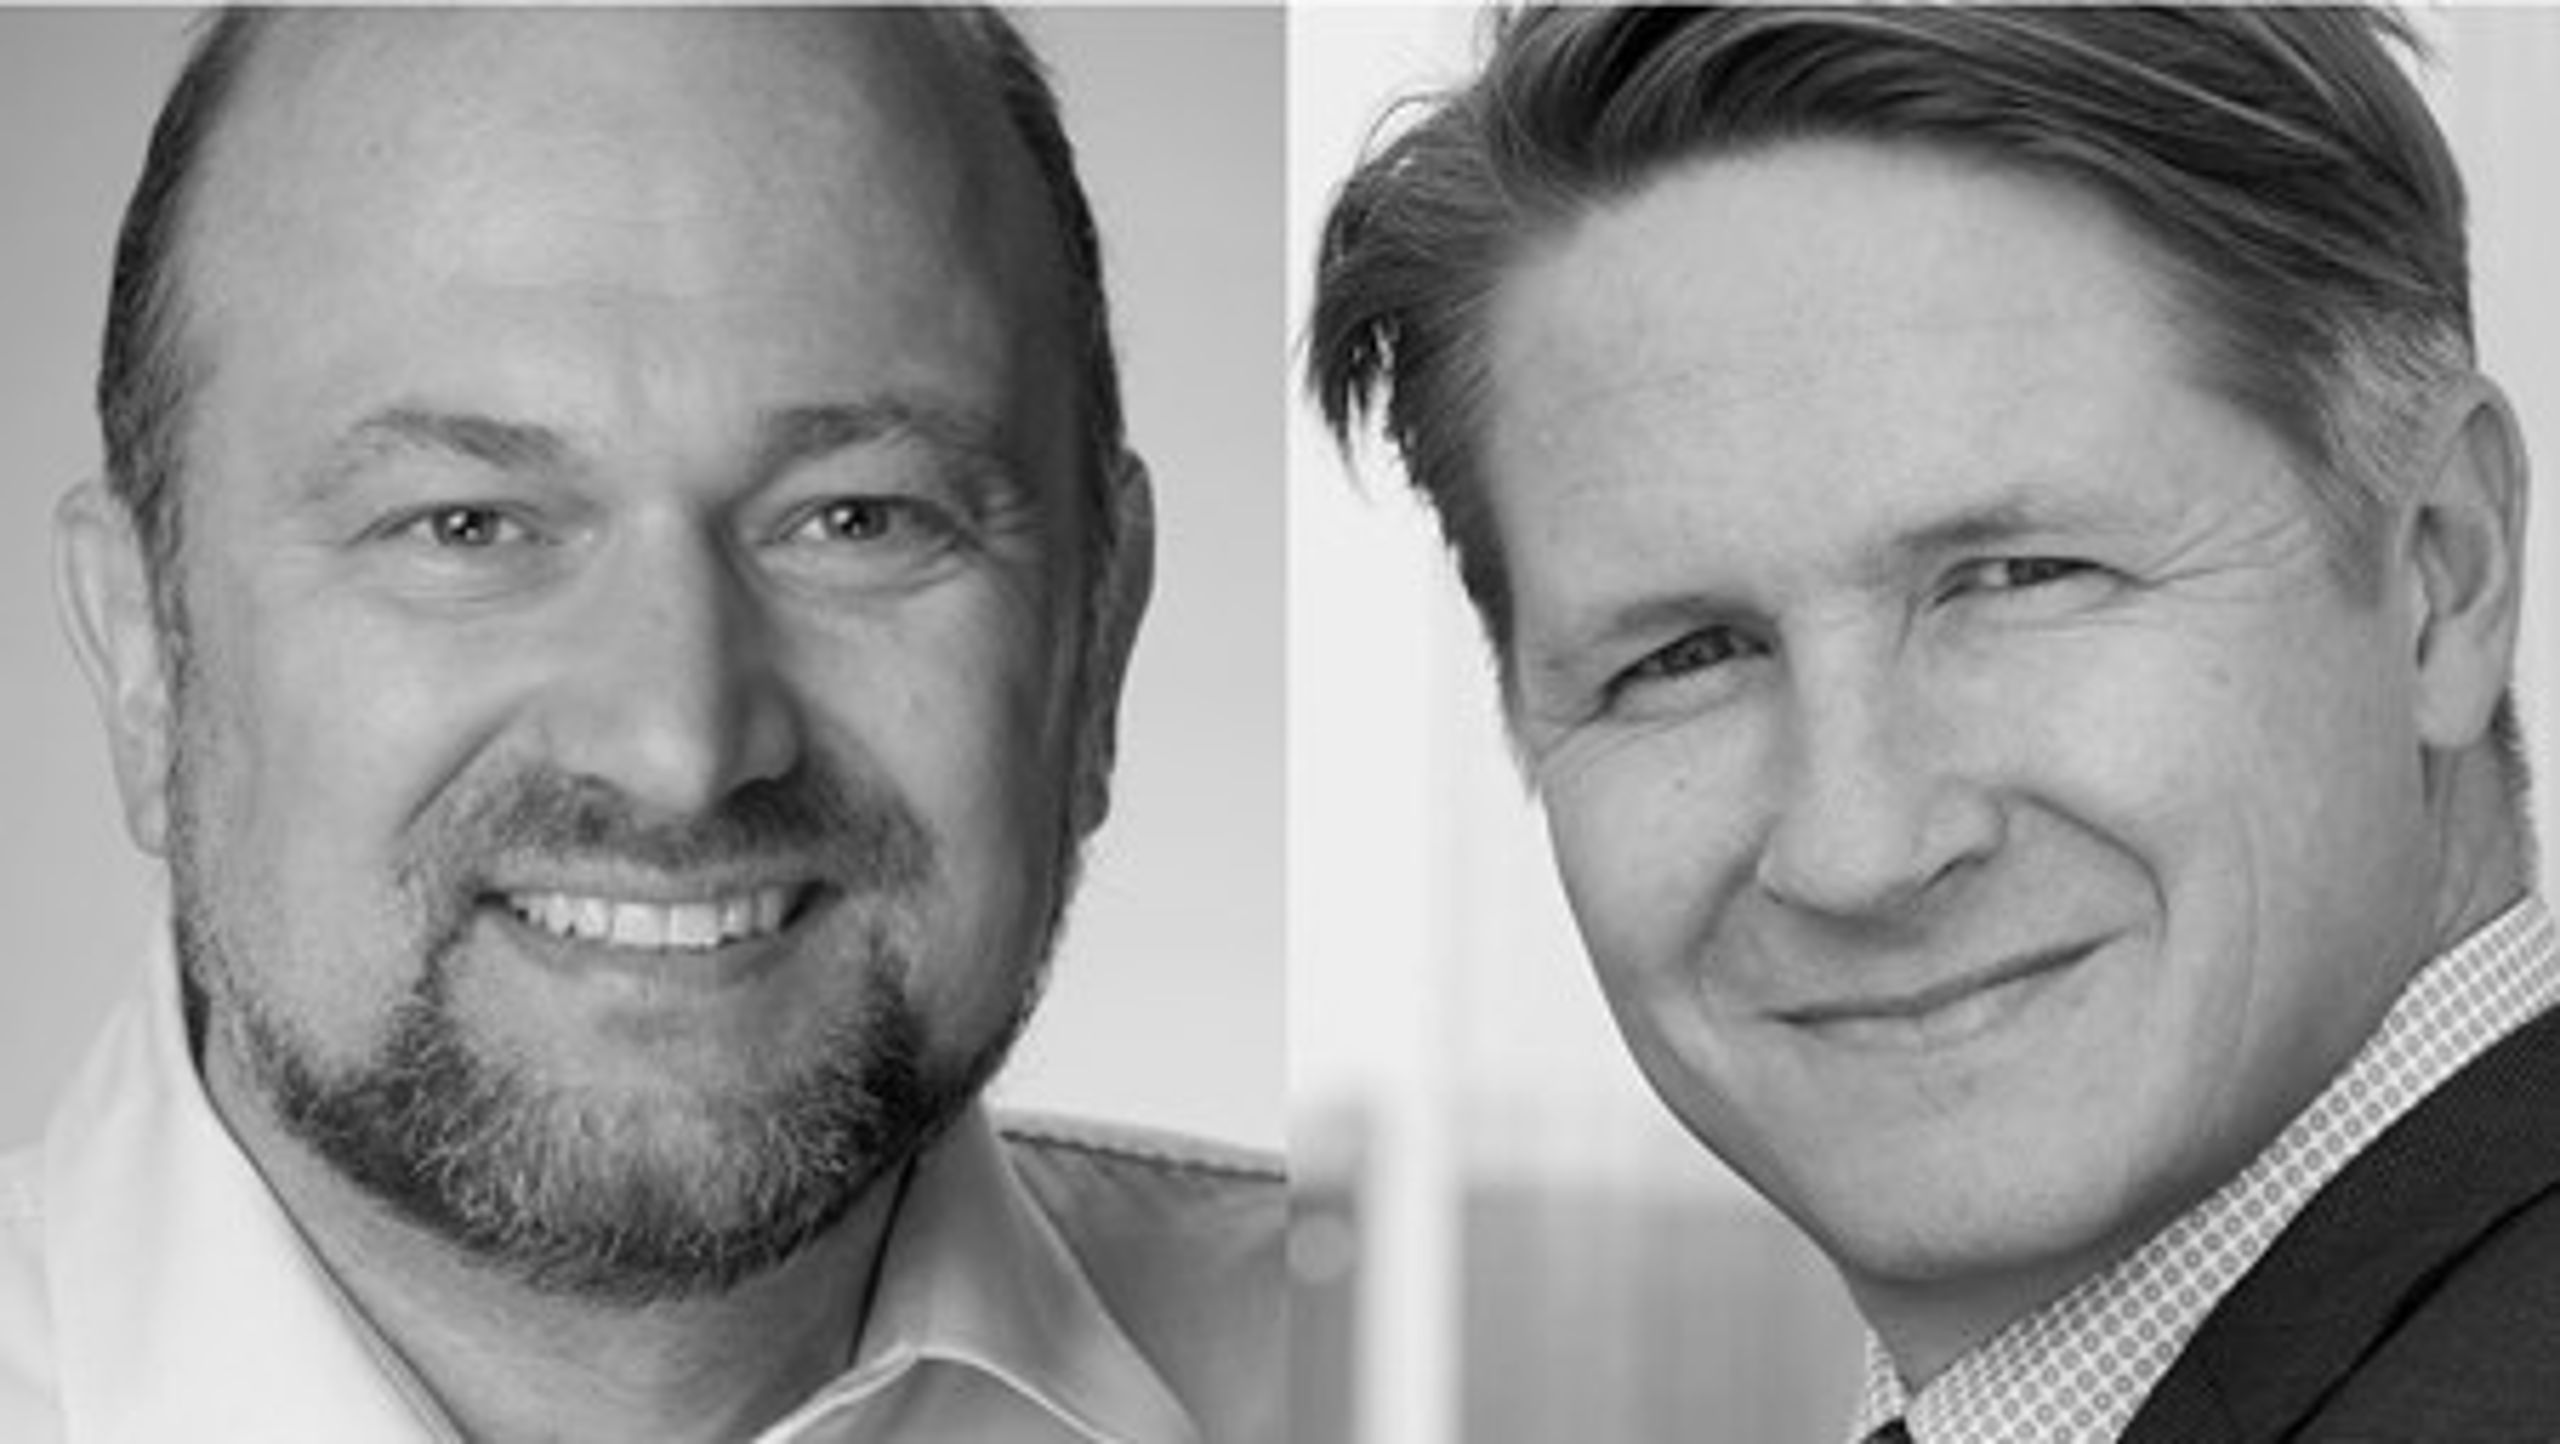 HK’s fællestilidsrepræsentant Eigil Johannesen og administrerende direktør i ITD Jacob Chr. Nielsen slår ind på samme spor på vej mod mere vækst og beskæftigelse i den danske transport- og logistikbranche.